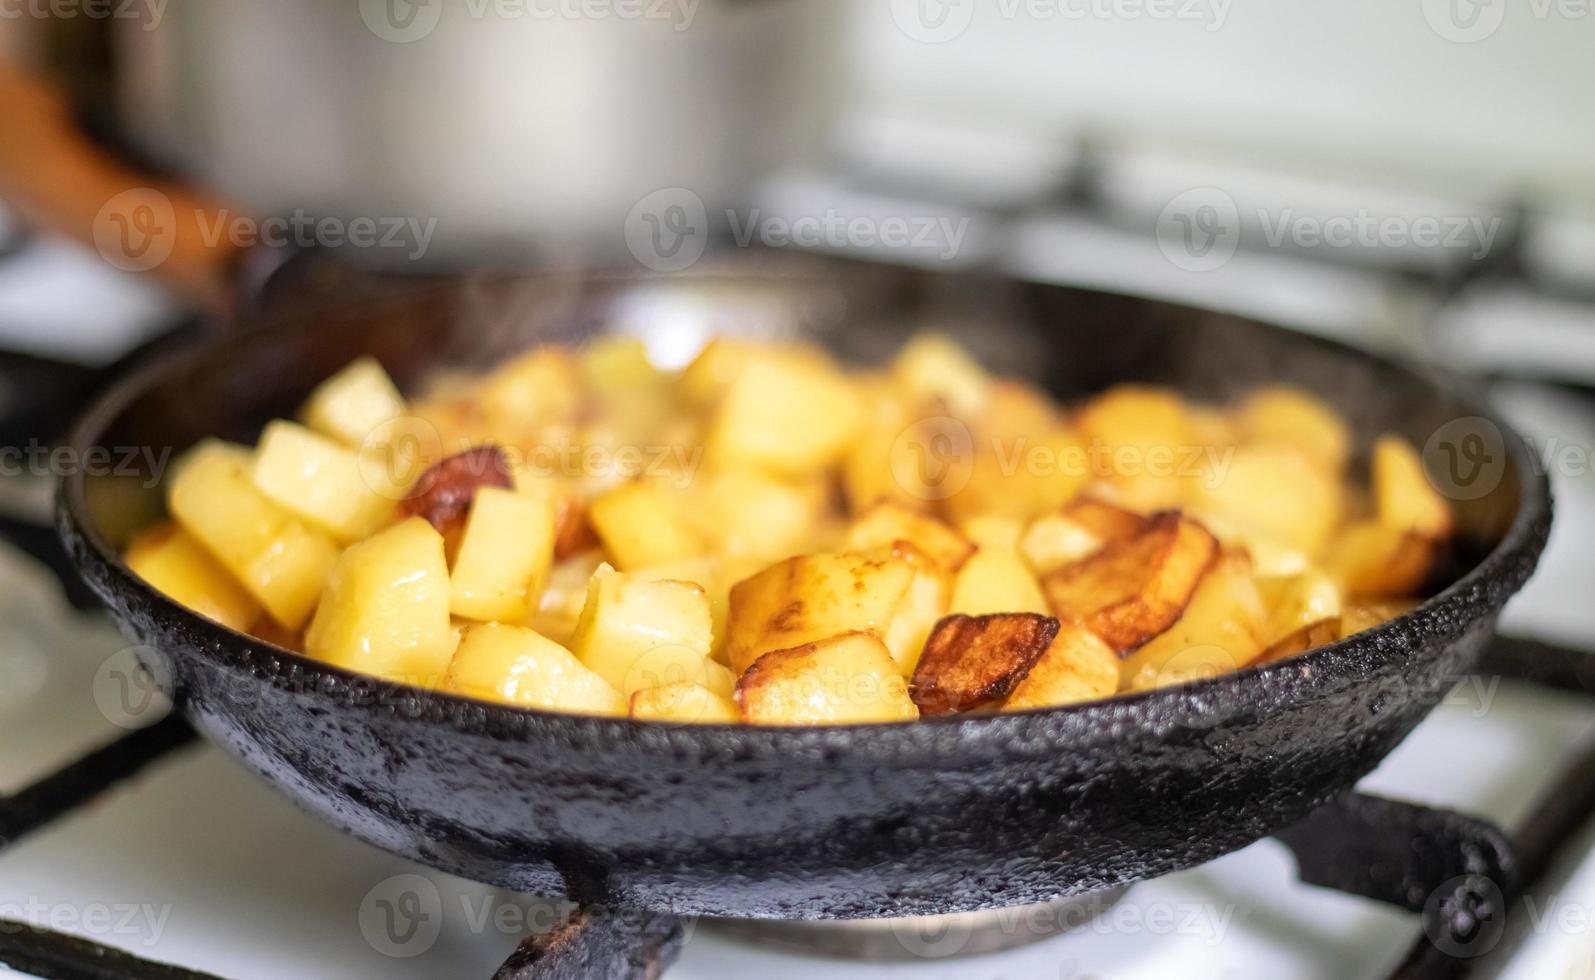 faire rôtir des pommes de terre fraîches dans une poêle en fonte avec de l'huile de tournesol. vue d'une cuisinière avec une poêle remplie de pommes de terre frites dorées dans une vraie cuisine. aliments cuits dans une poêle à frire maison. photo